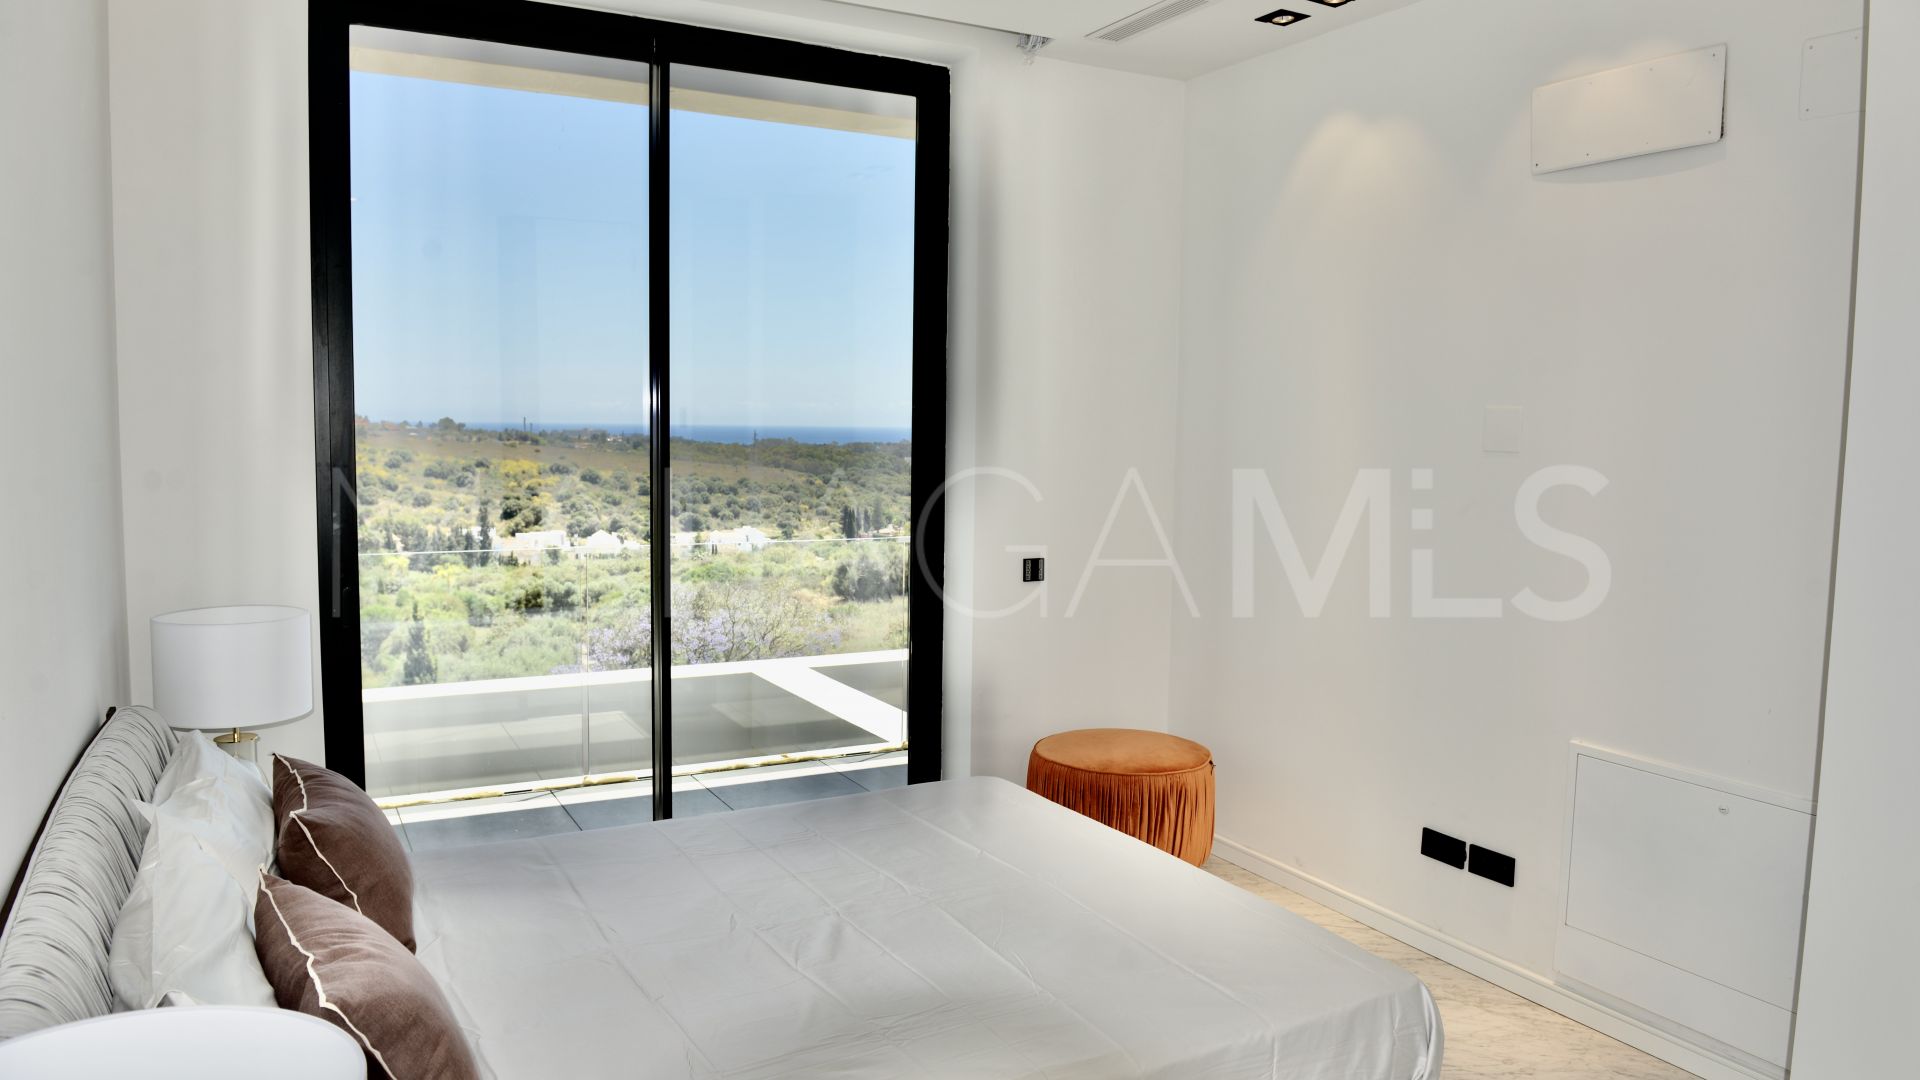 Buy villa in Los Flamingos with 5 bedrooms